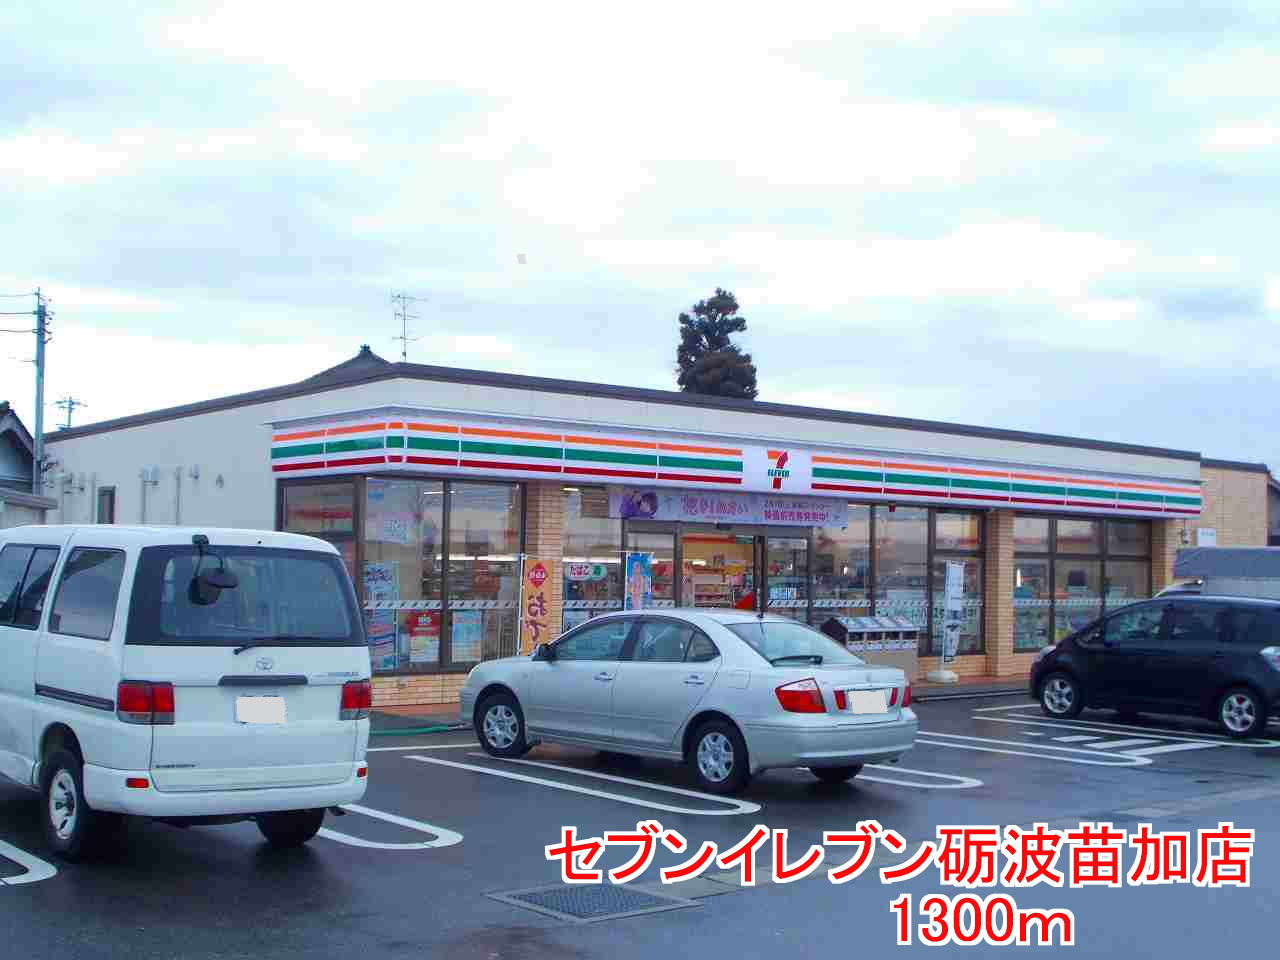 Convenience store. seven Eleven Tonami Noka shop until (convenience store) 1300m